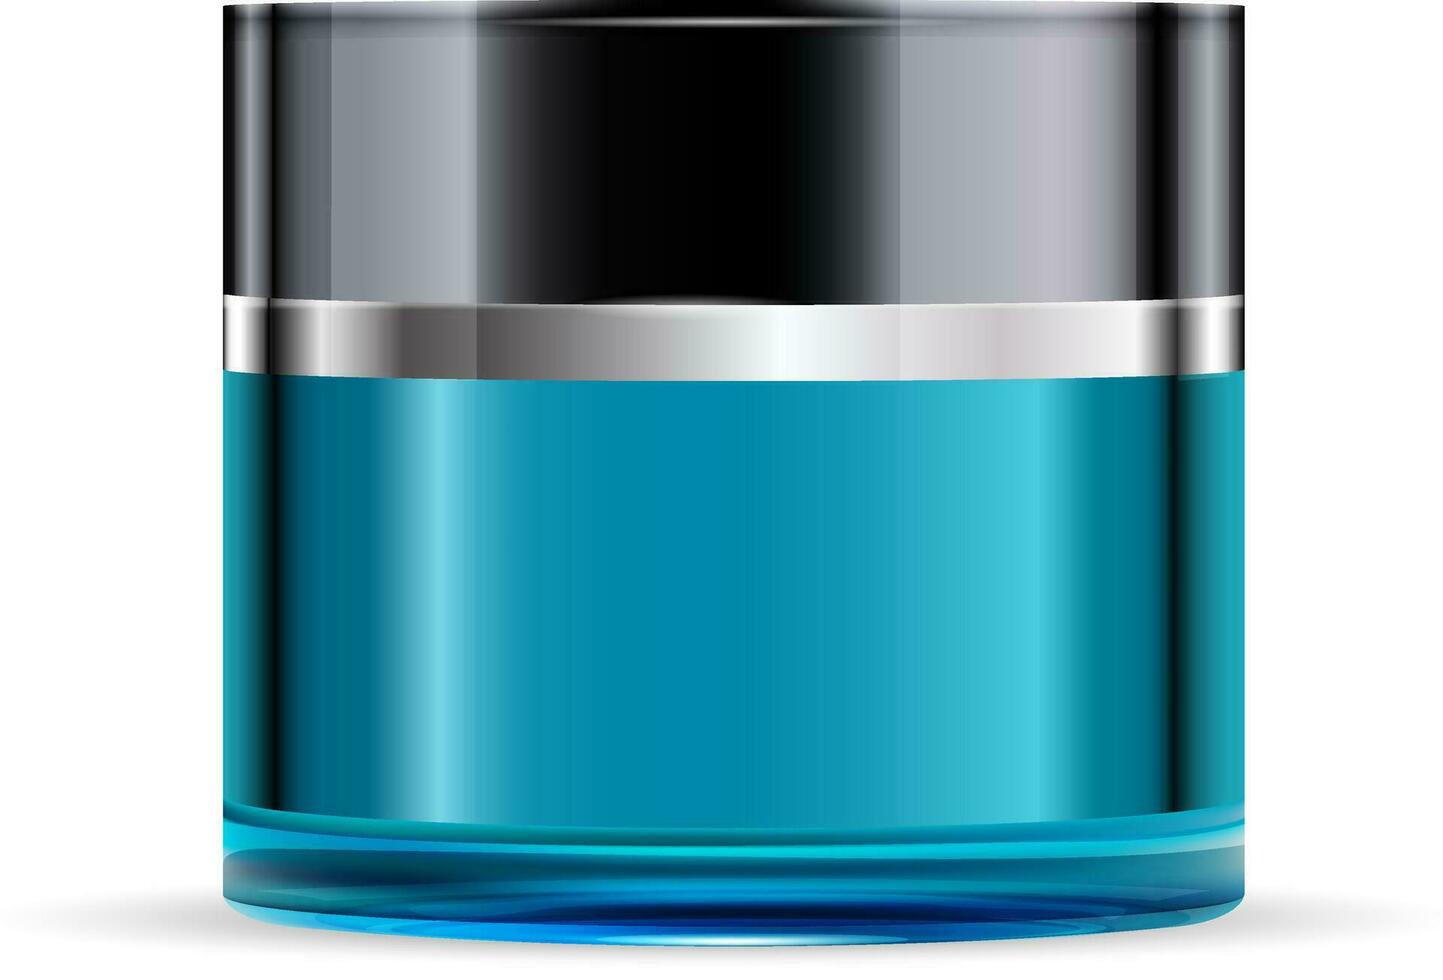 volta azul vidro jarra com Preto lustroso plástico tampa para cosméticos - corpo creme, gel, manteiga, banho sal, pele Cuidado, pó. realista embalagem brincar modelo. vetor ilustração.